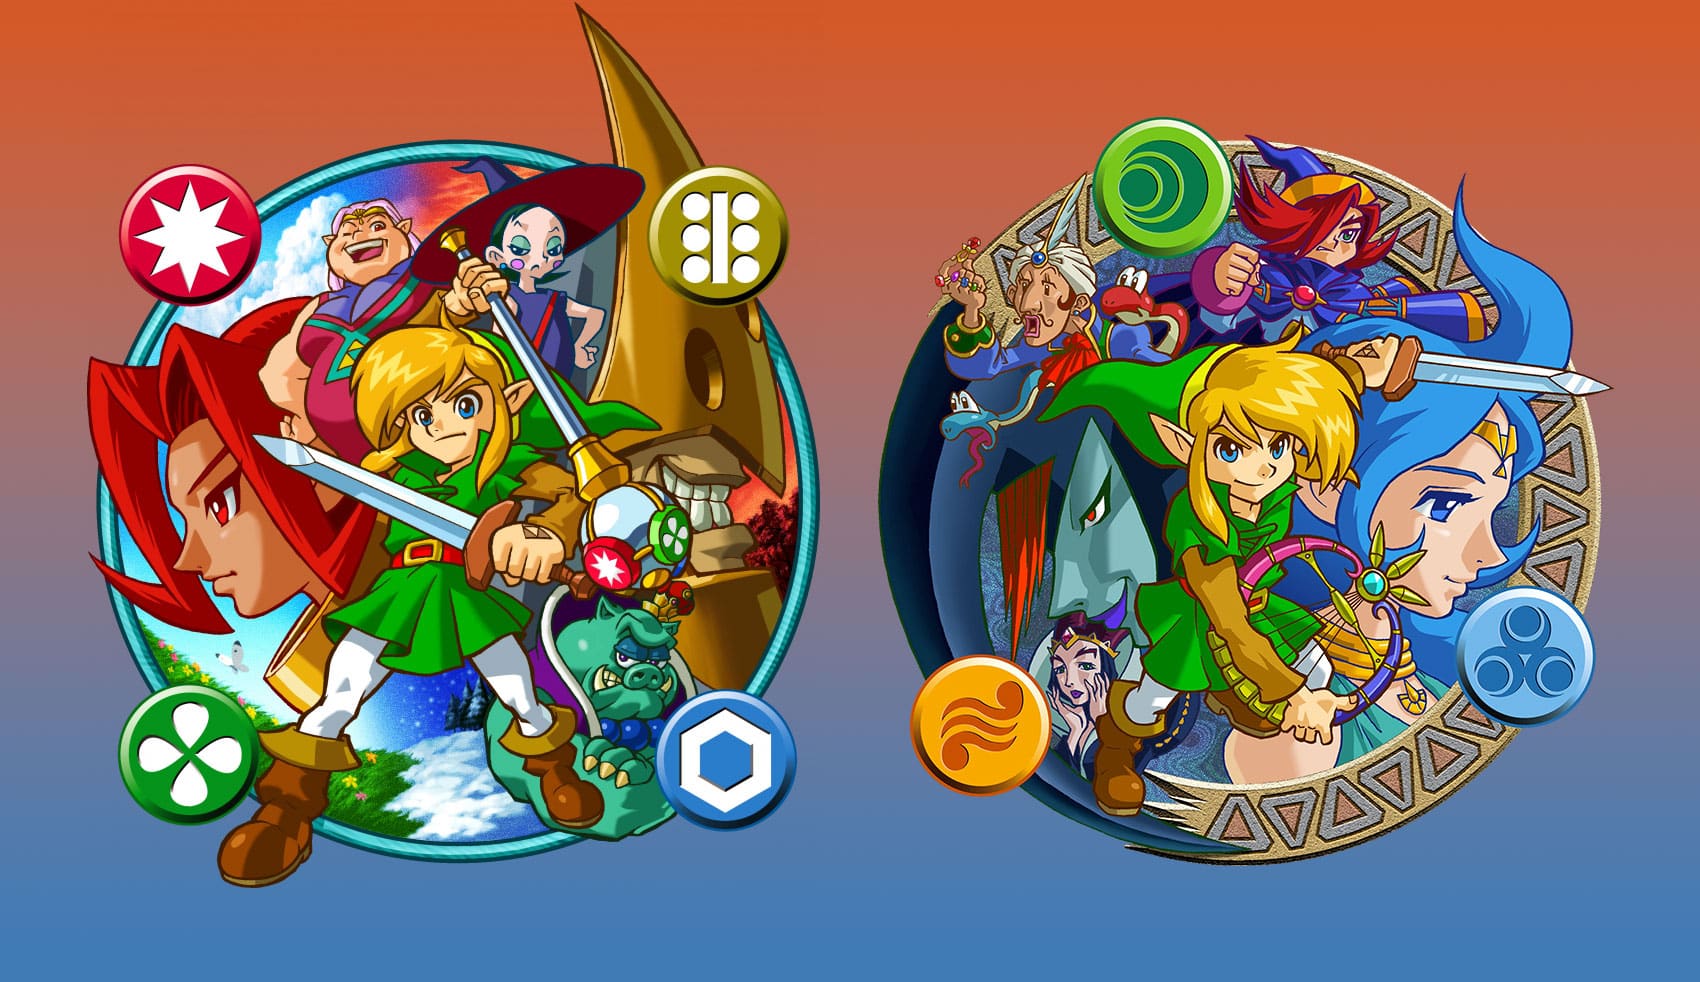 Nintendo Switch Online recebe dois jogos clássicos de Zelda